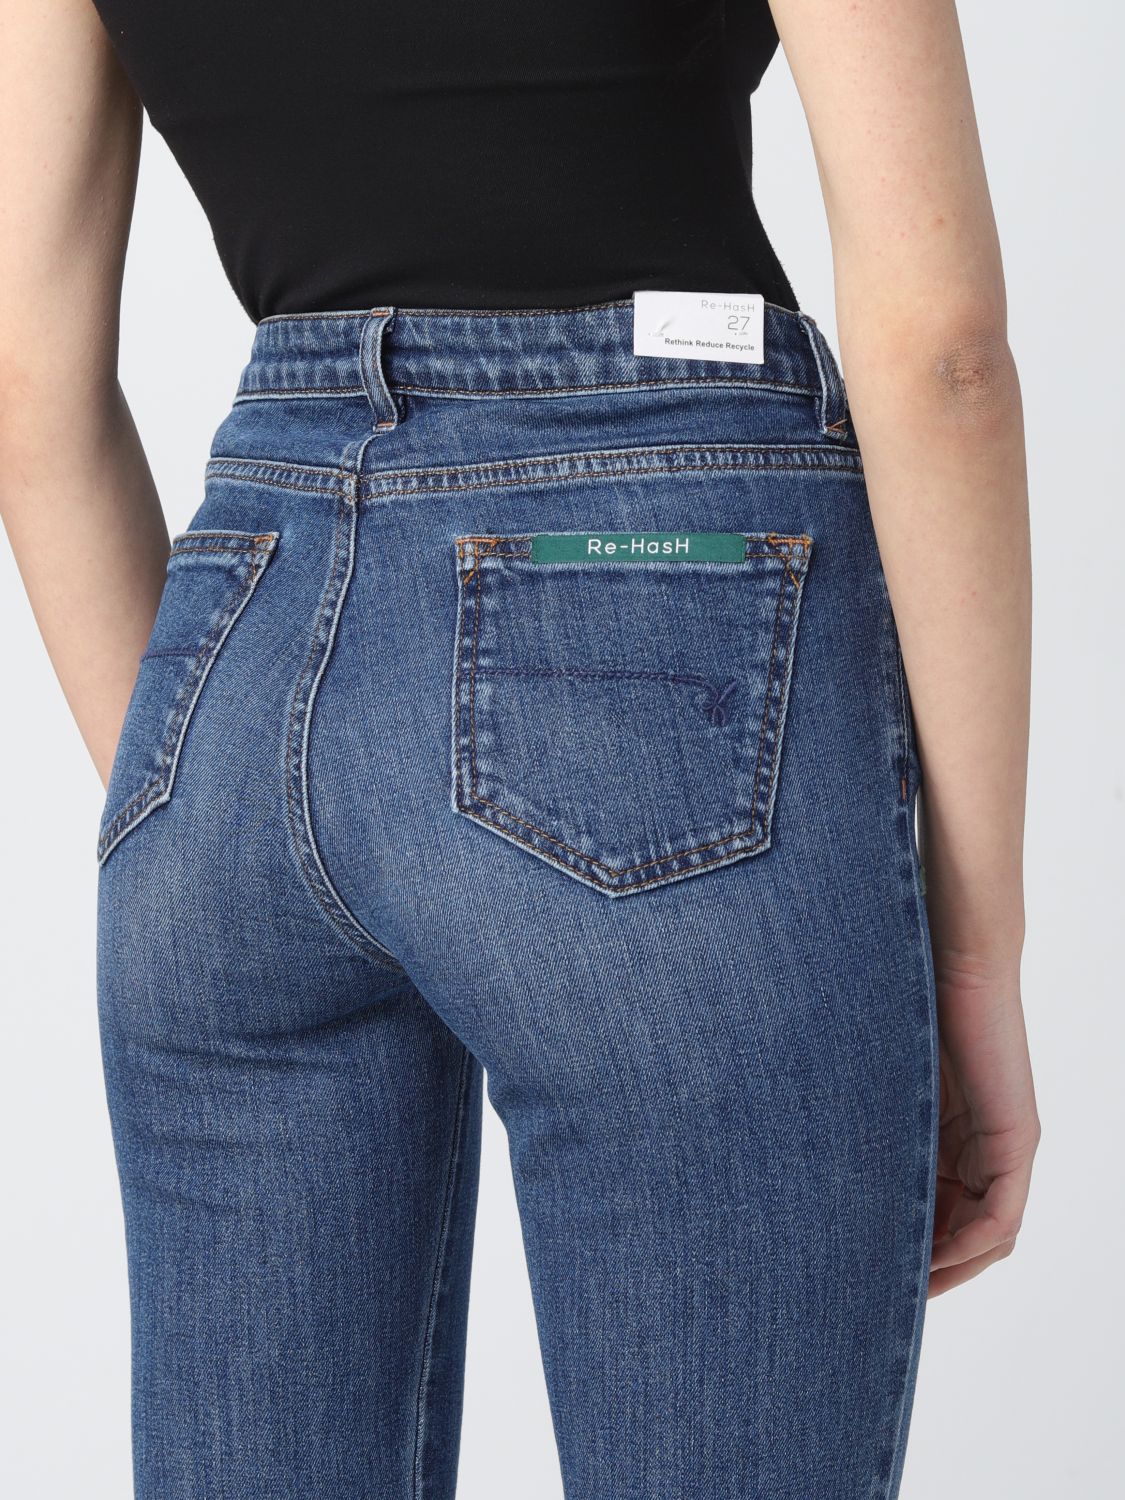 Jeans Re-Hash: Re-Hash Damen jeans blau 3